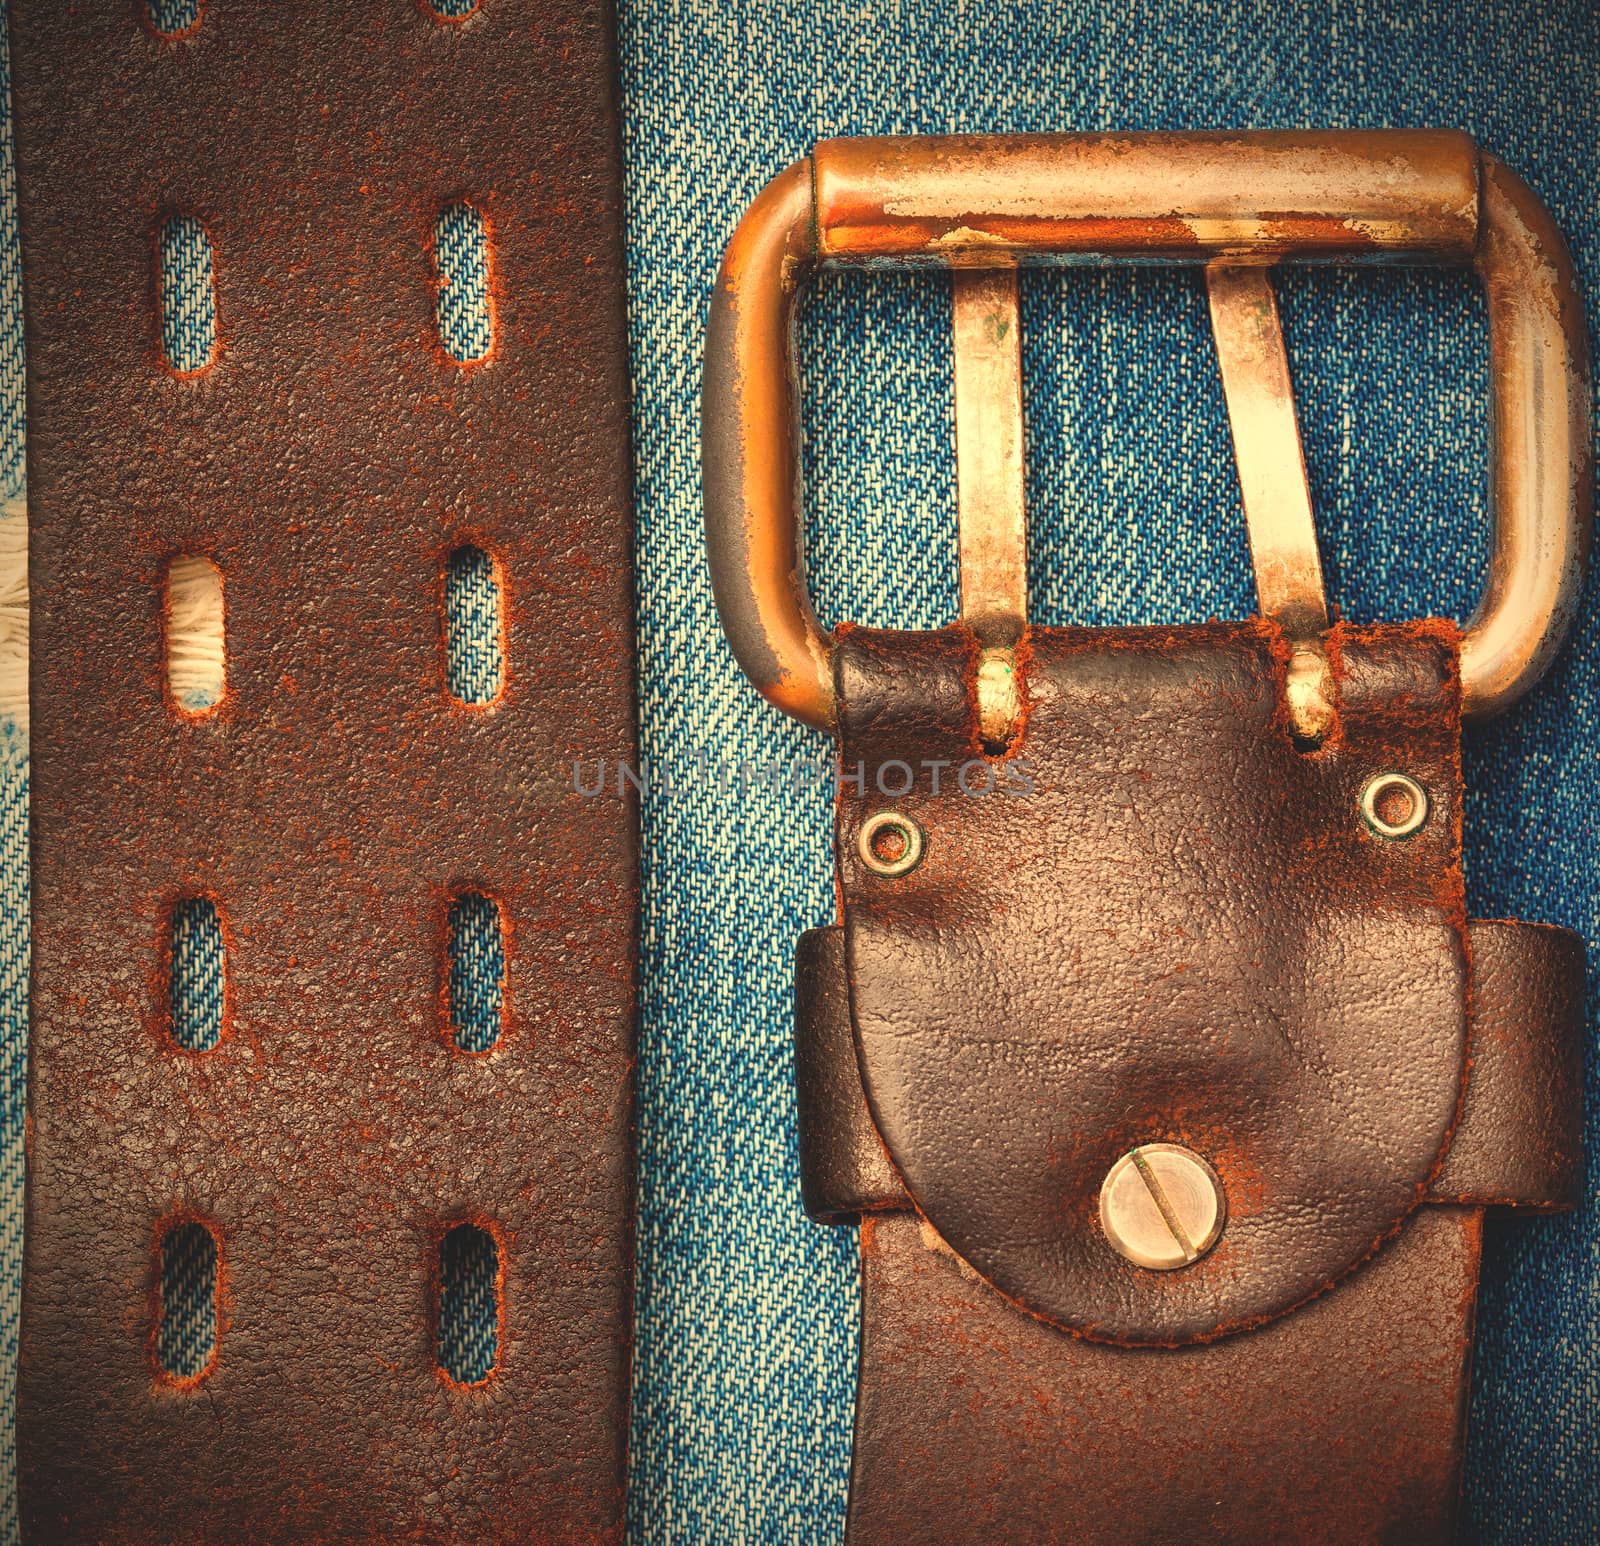 vintage leather belt on a denim background, close up. instagram image style